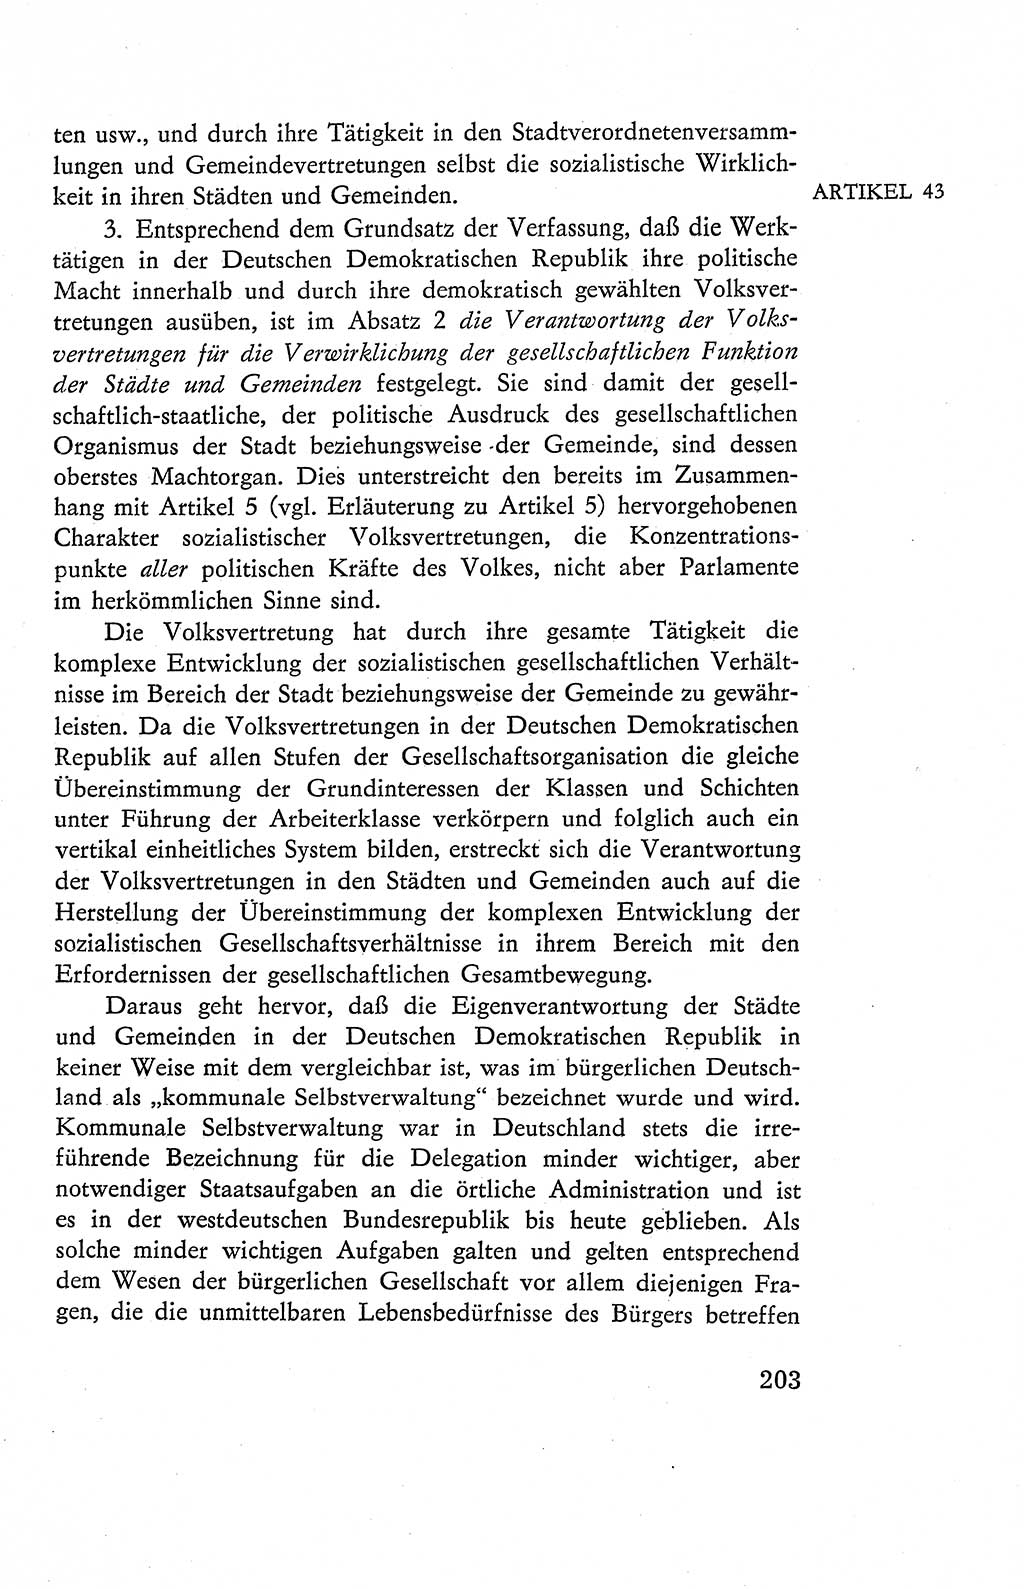 Verfassung der Deutschen Demokratischen Republik (DDR), Dokumente, Kommentar 1969, Band 2, Seite 203 (Verf. DDR Dok. Komm. 1969, Bd. 2, S. 203)